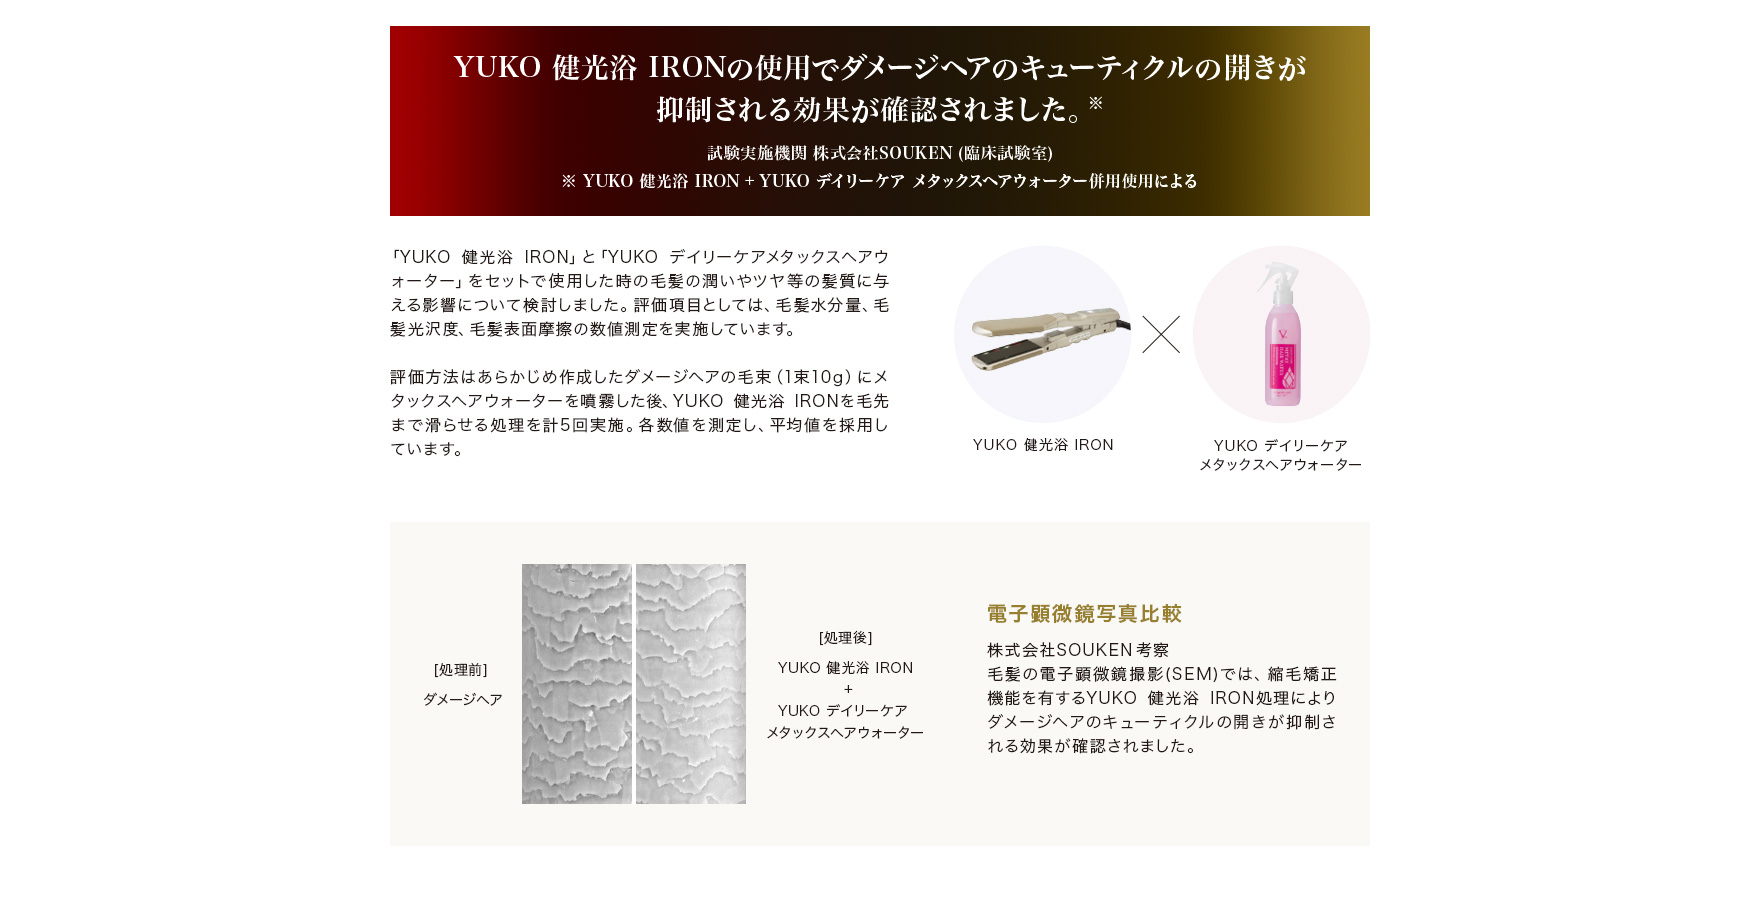 YUKO 健光浴 IRONの使用でダメージヘアのキューティクルの開きが抑制される効果が確認されました。